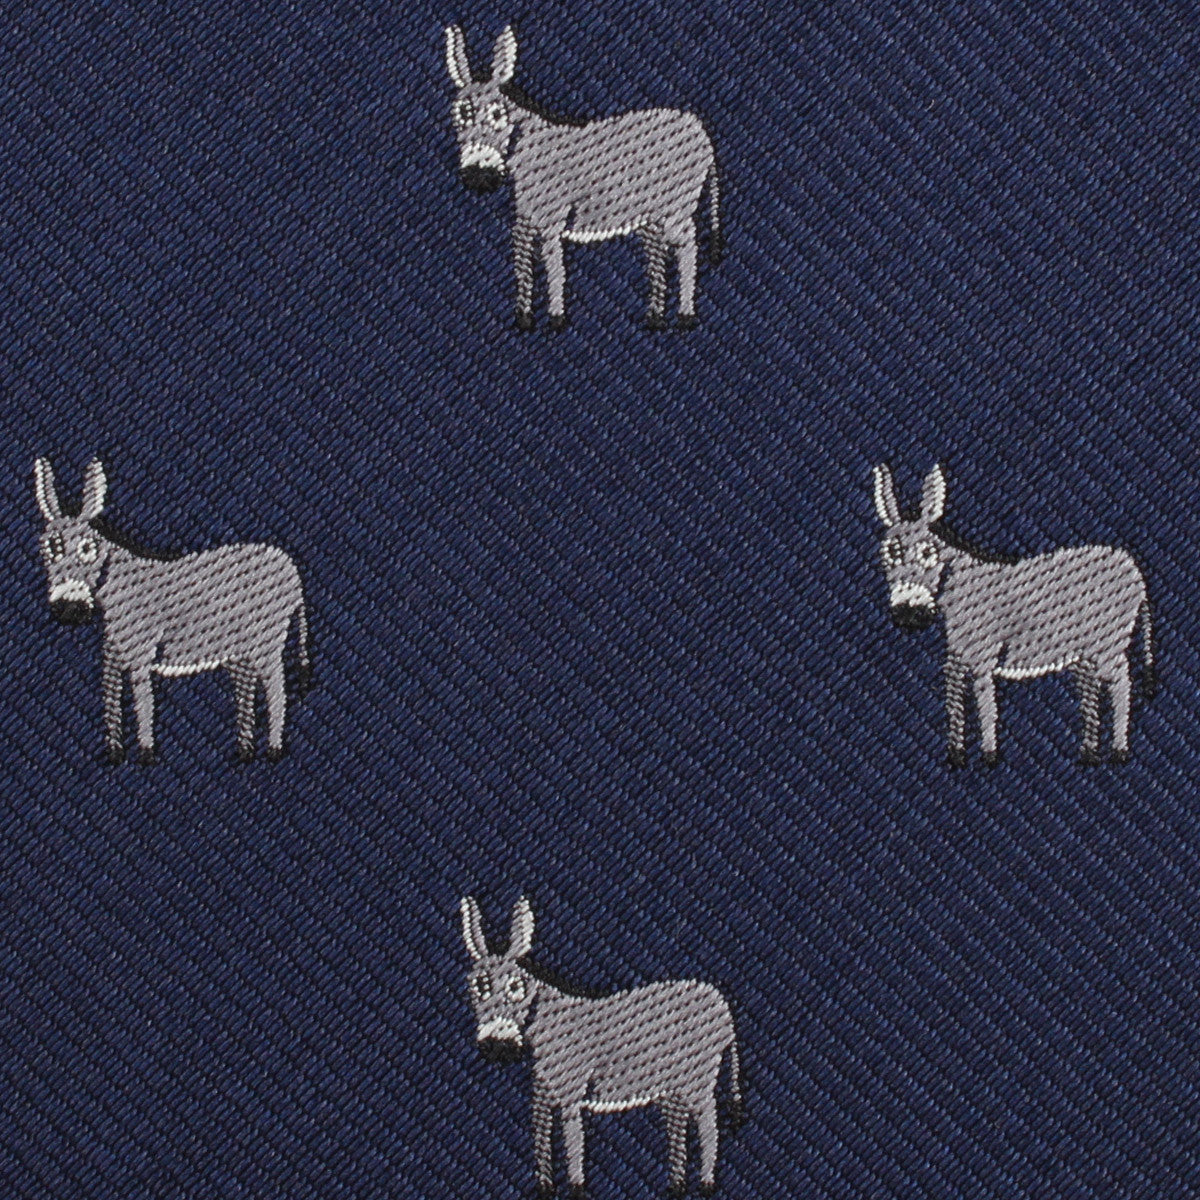 Donkey Fabric Pocket Square